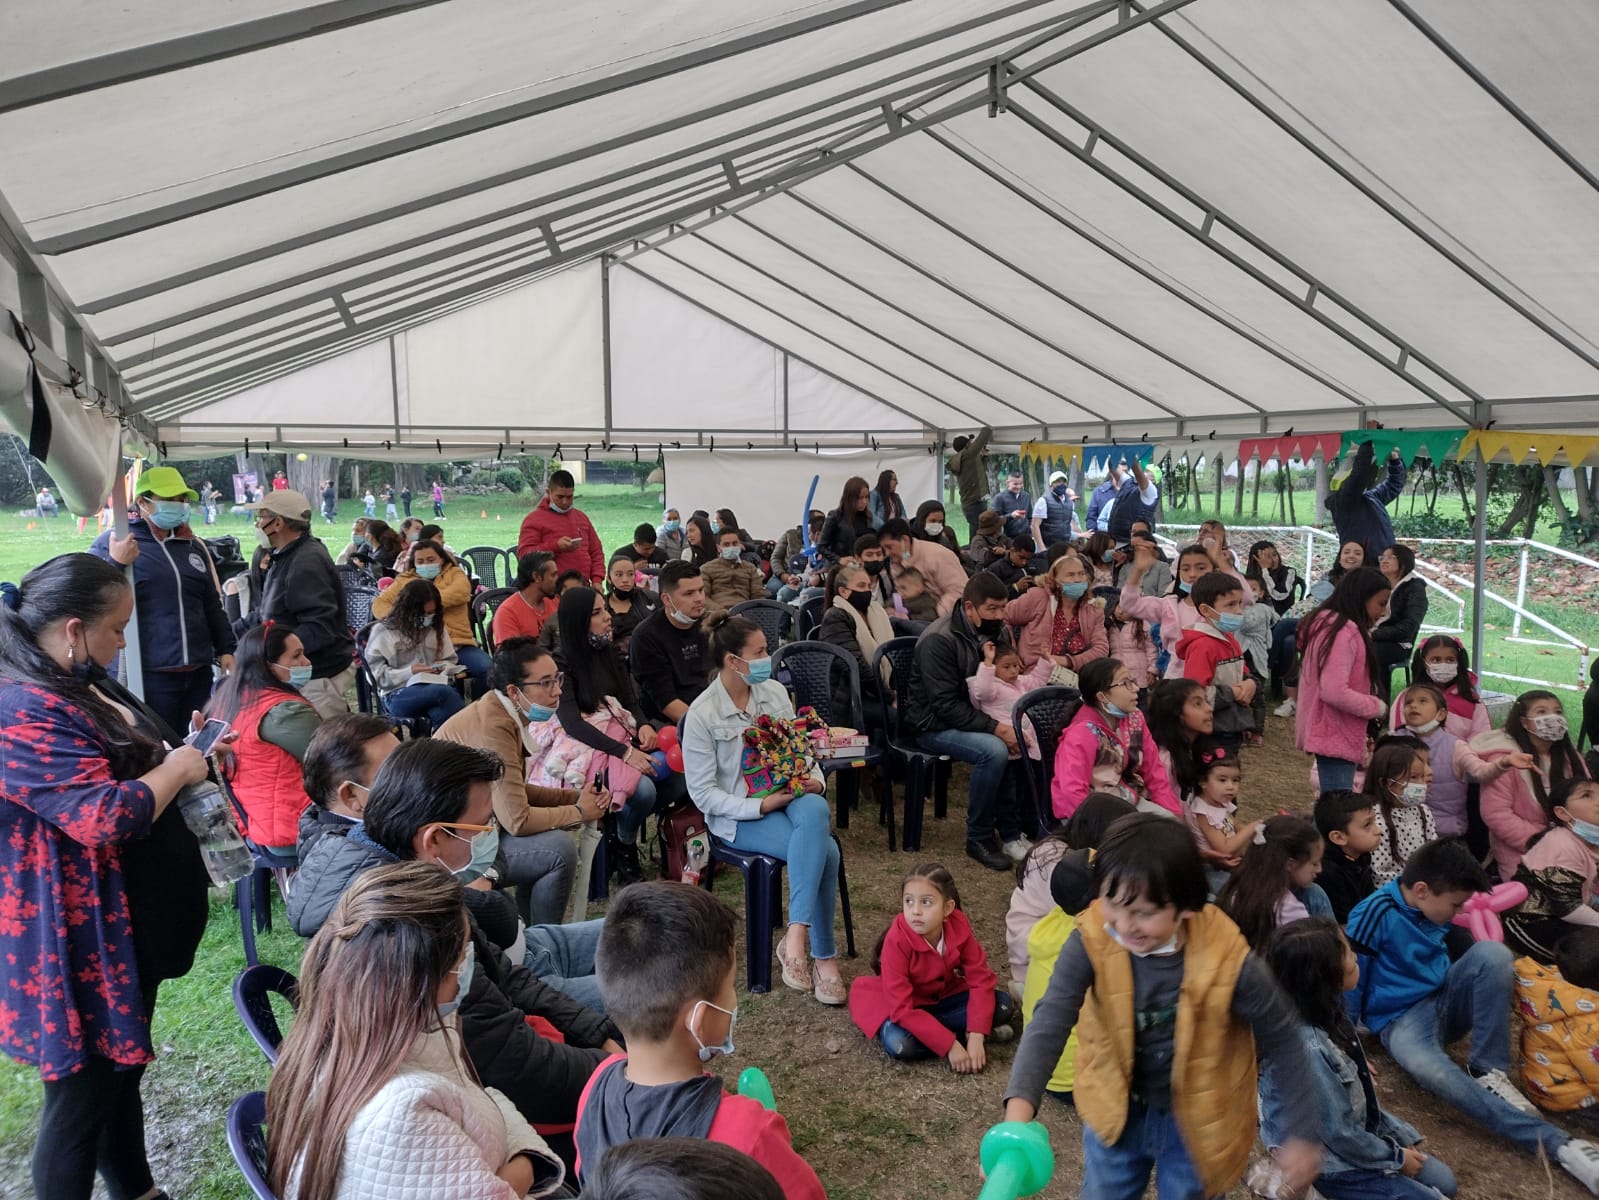 FESTA HÁ MAGIA NO AR - 5SENTIDOS EVENTS FOR KIDS N JUNIORS